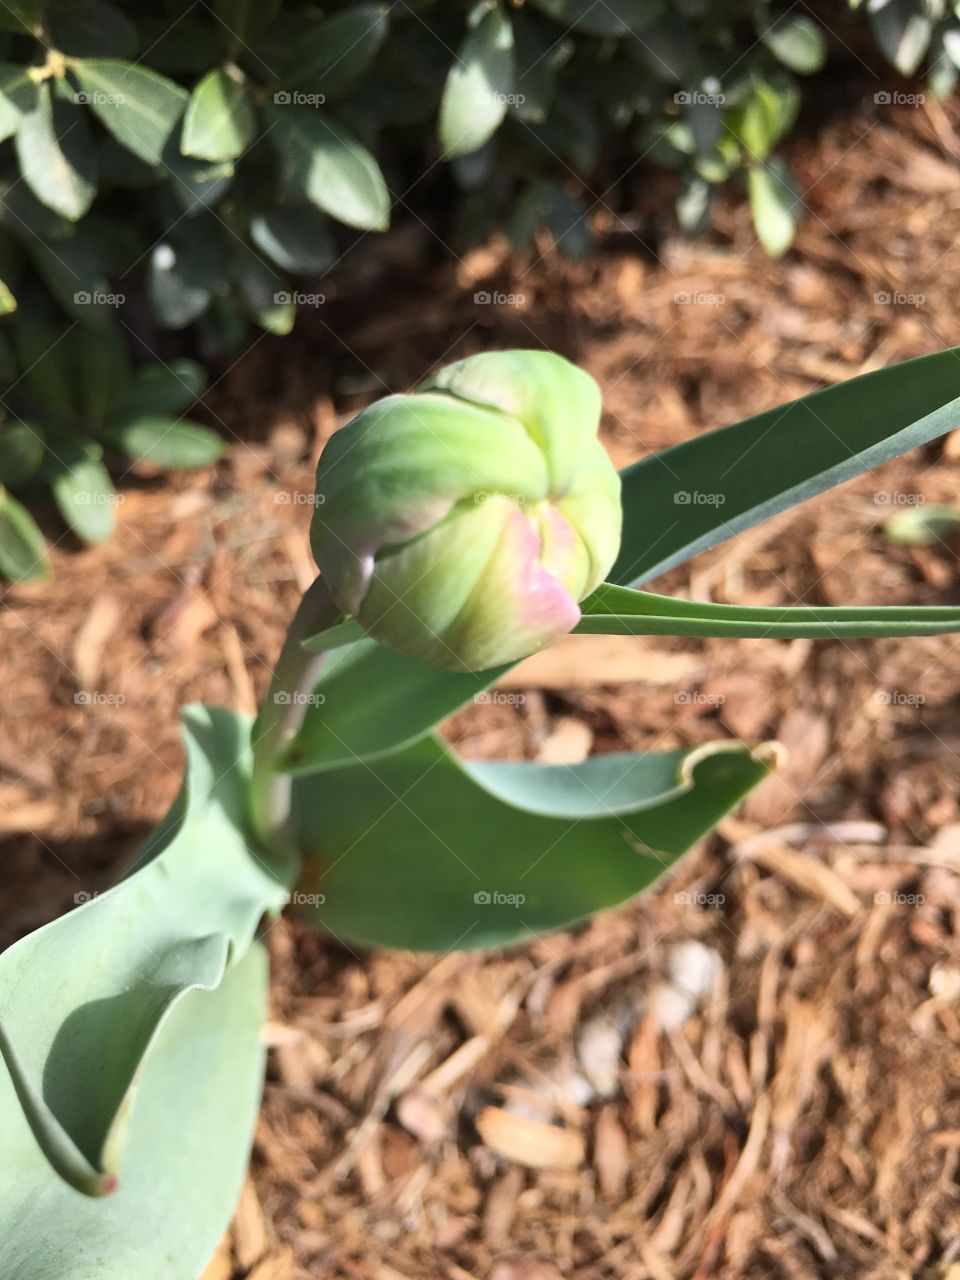 Double tulip